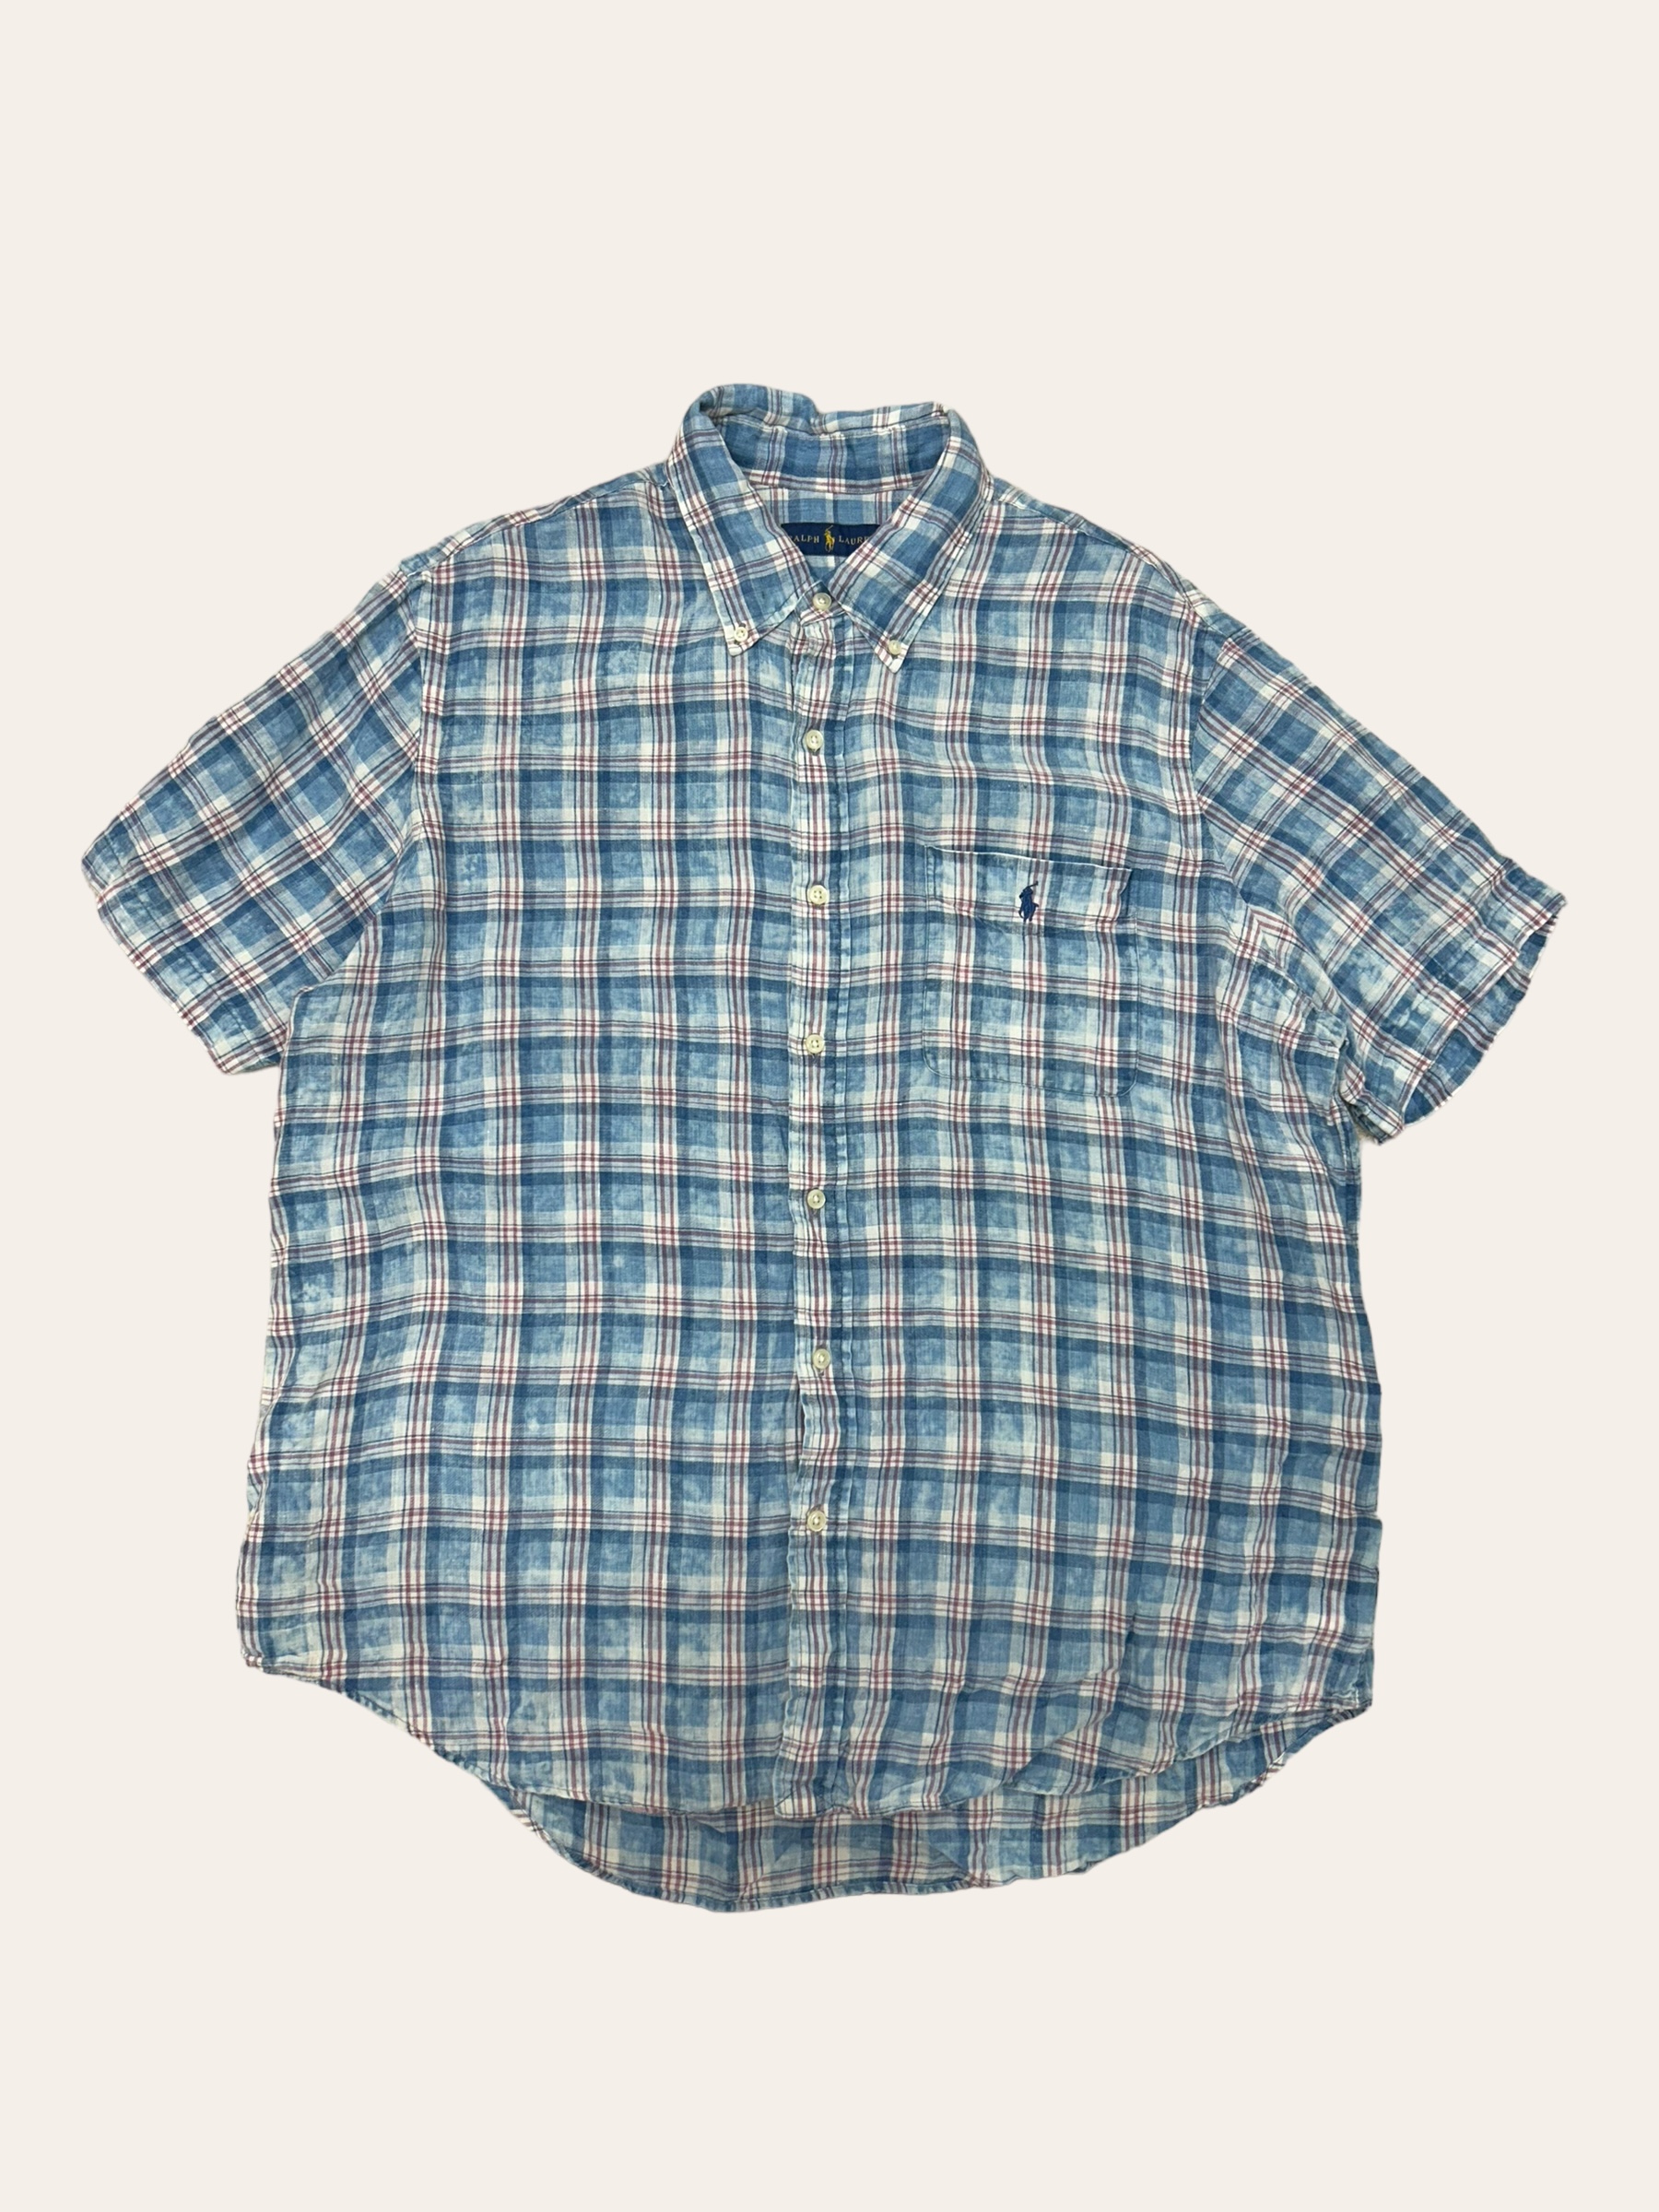 (From USA)Polo ralph lauren madras check linen short sleeve shirt XL